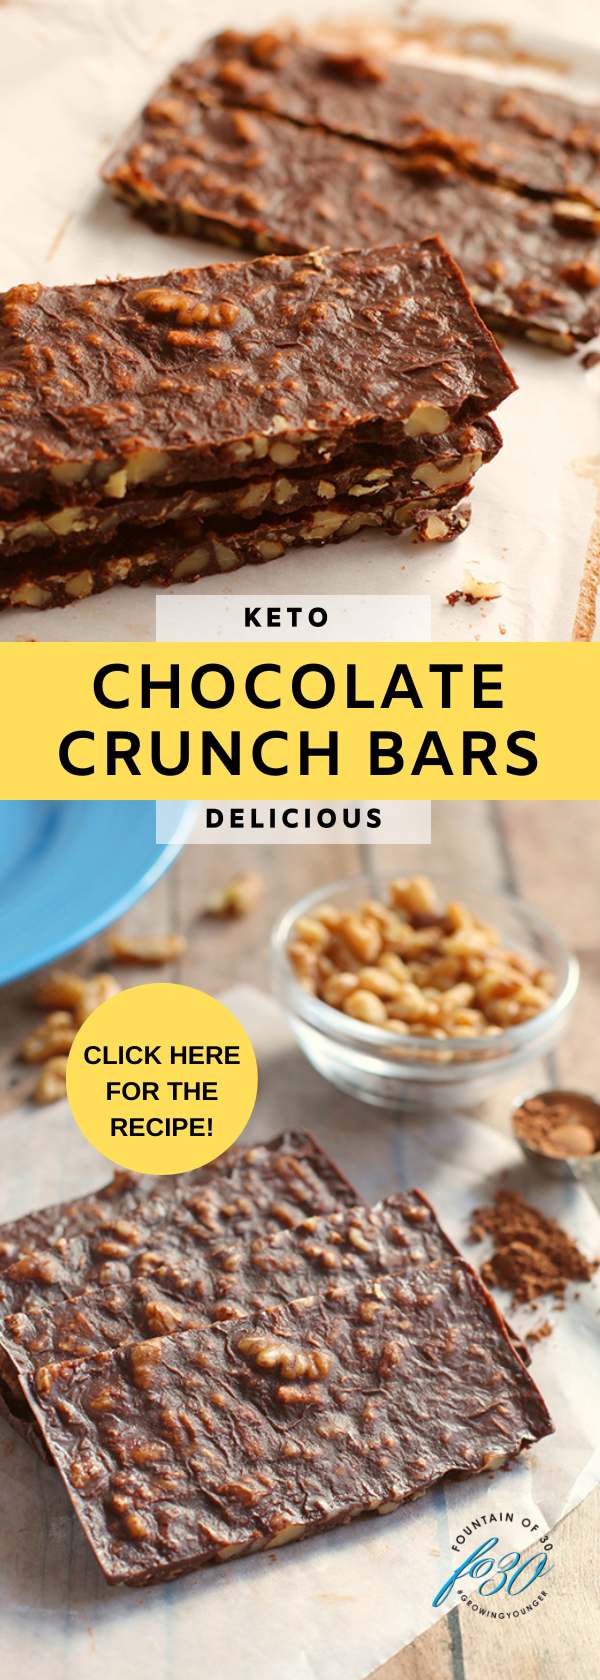 make your own keto chocolate crunch bars fountainof30